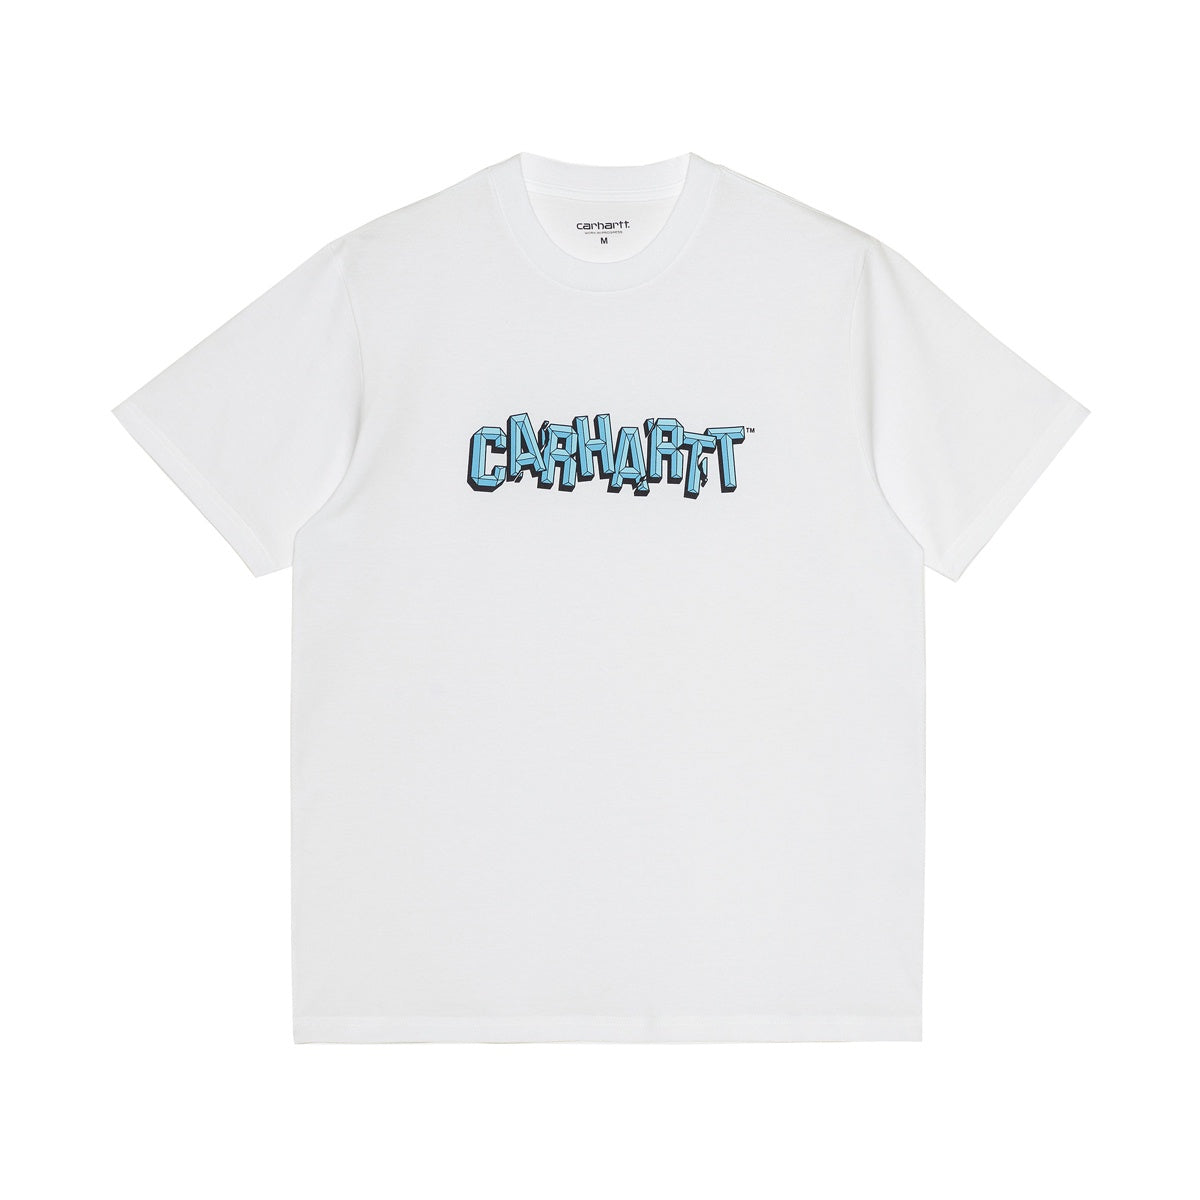 Carhartt WIP S/S Shattered Script T-Shirt White